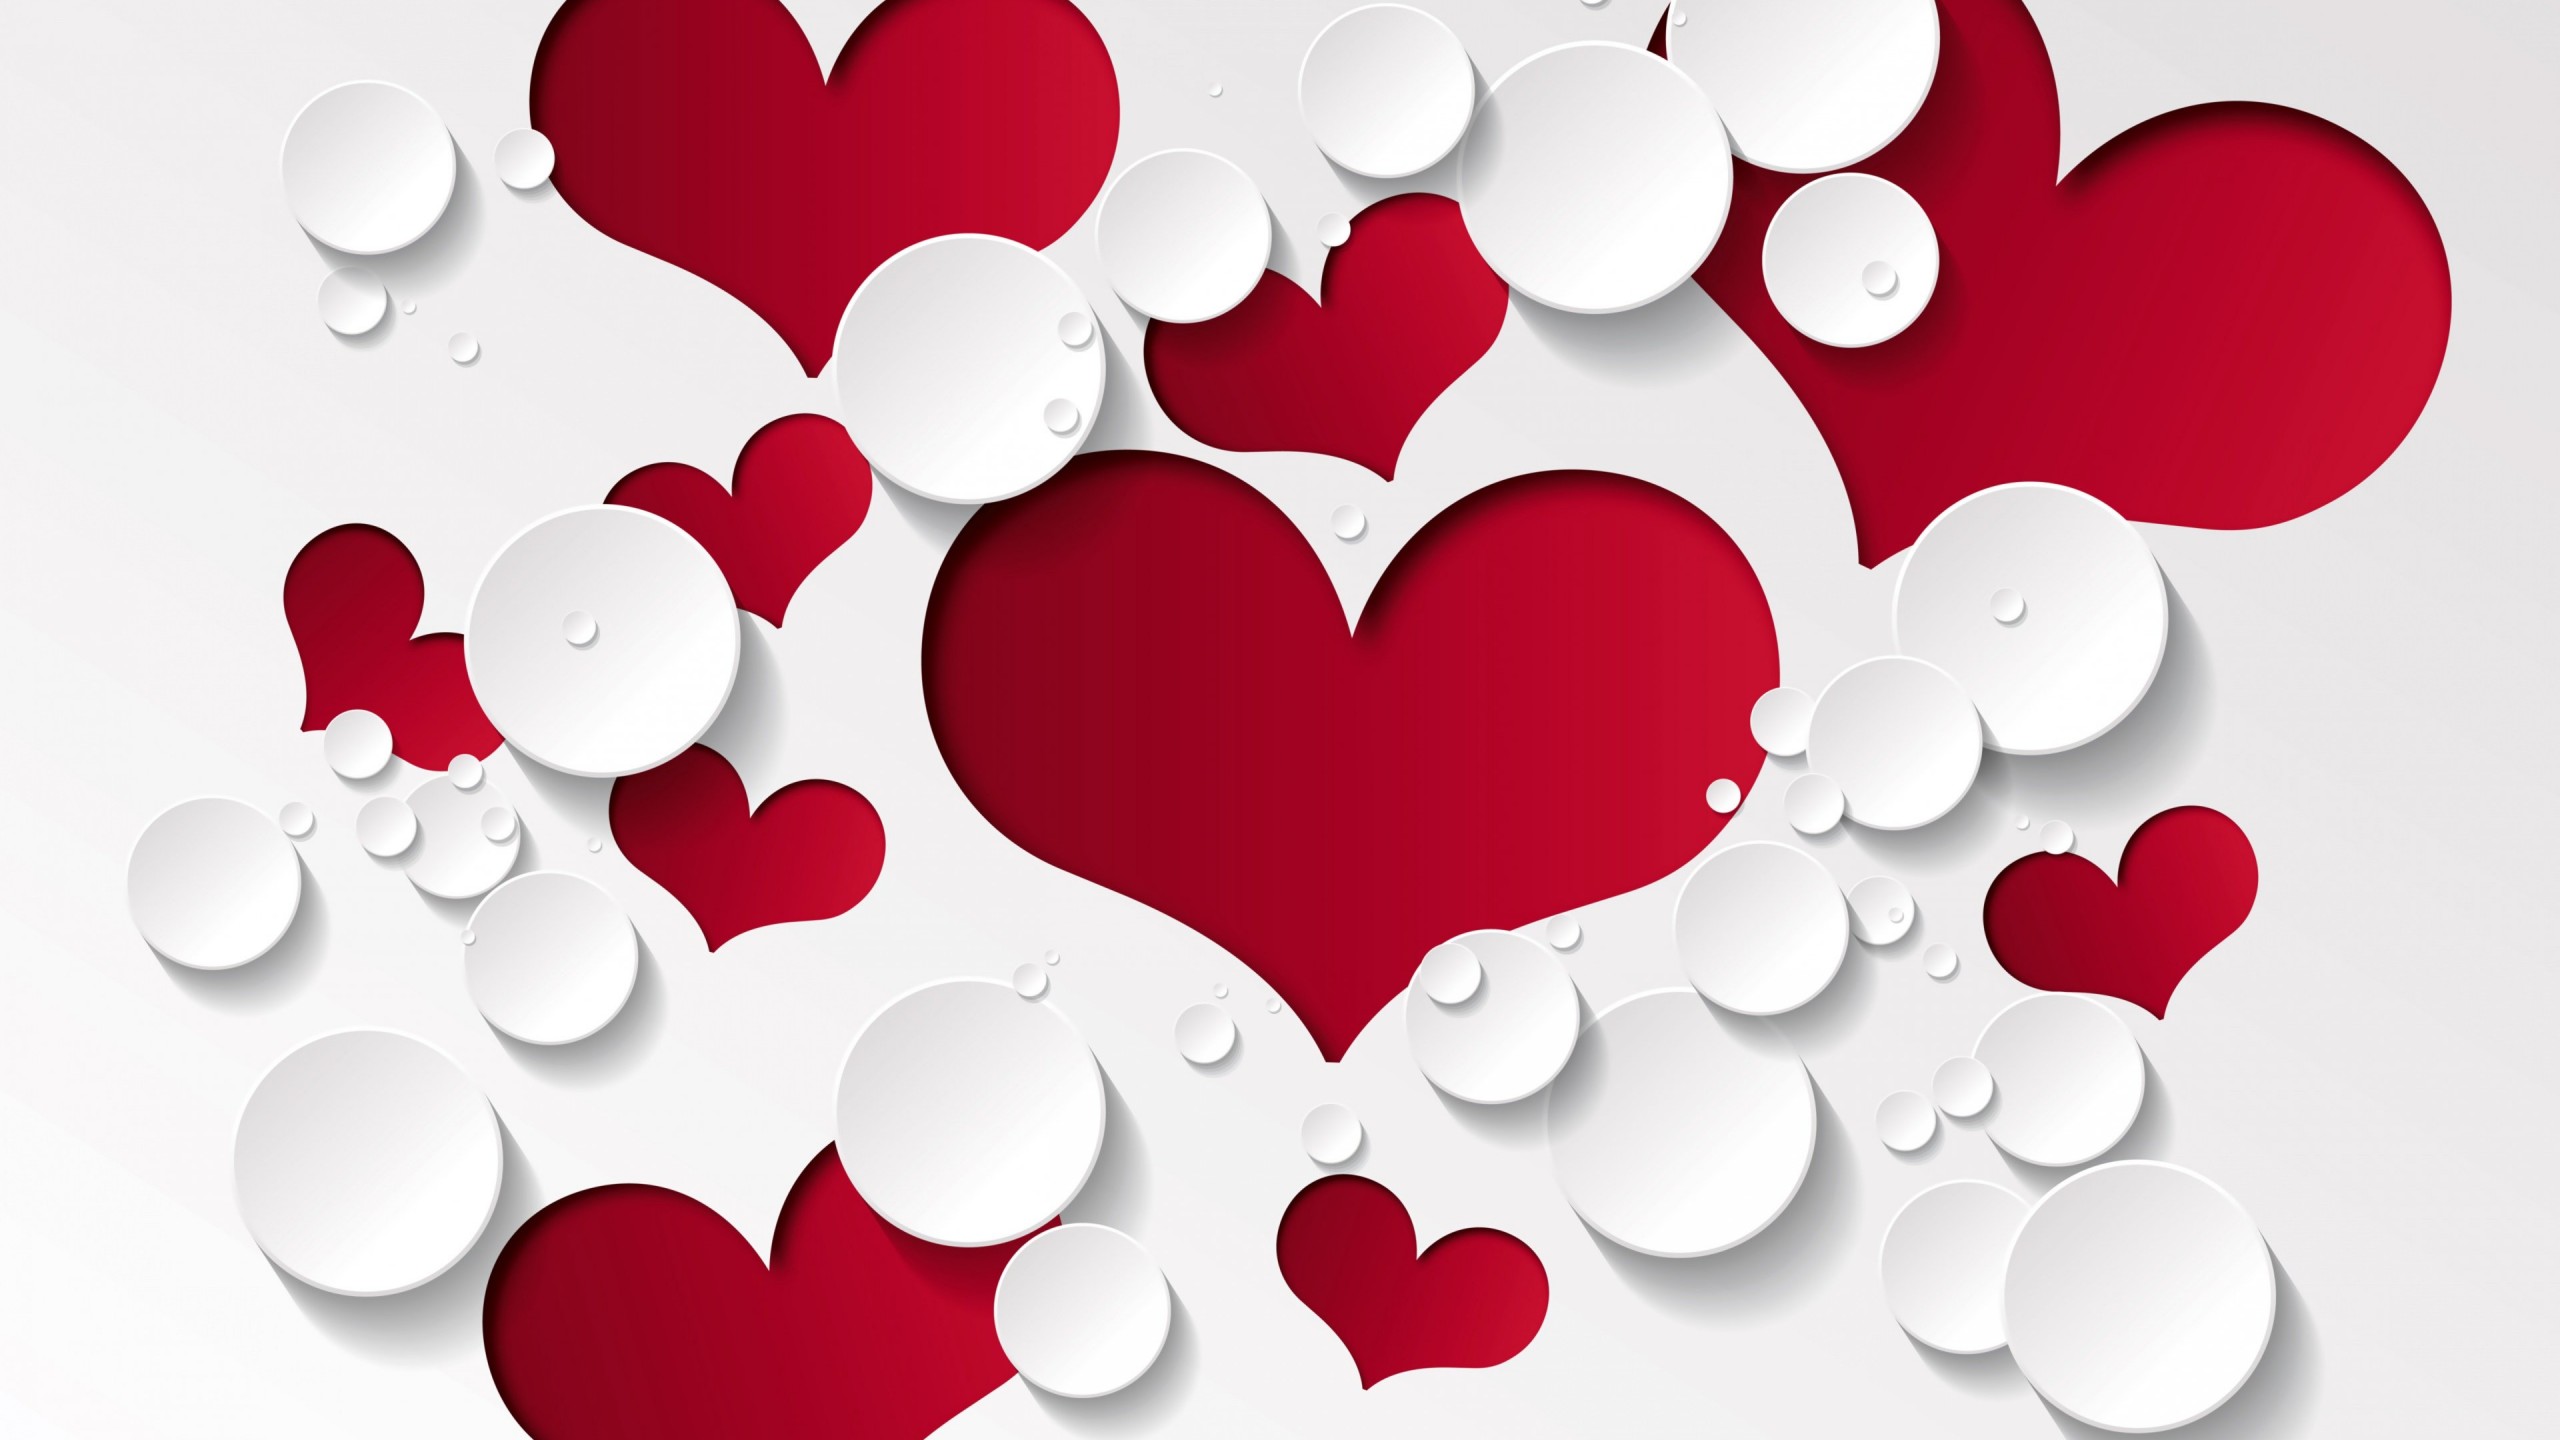 Love Heart Shaped Pattern Wallpaper for Desktop 2560x1440